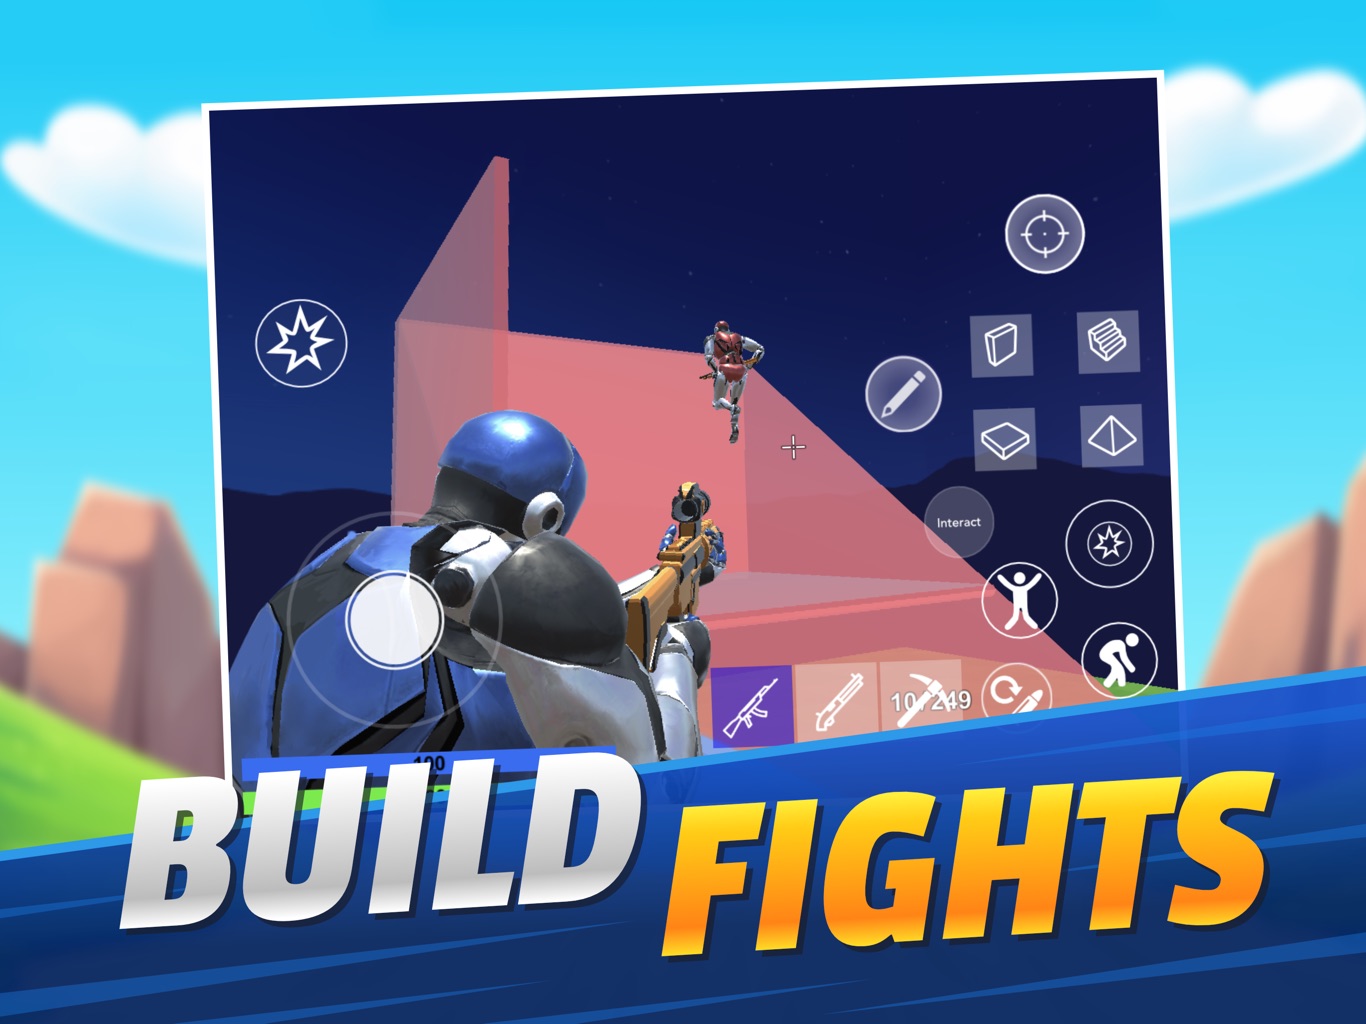 1v1.LOL - Build Battle Royale para iPhone - Download